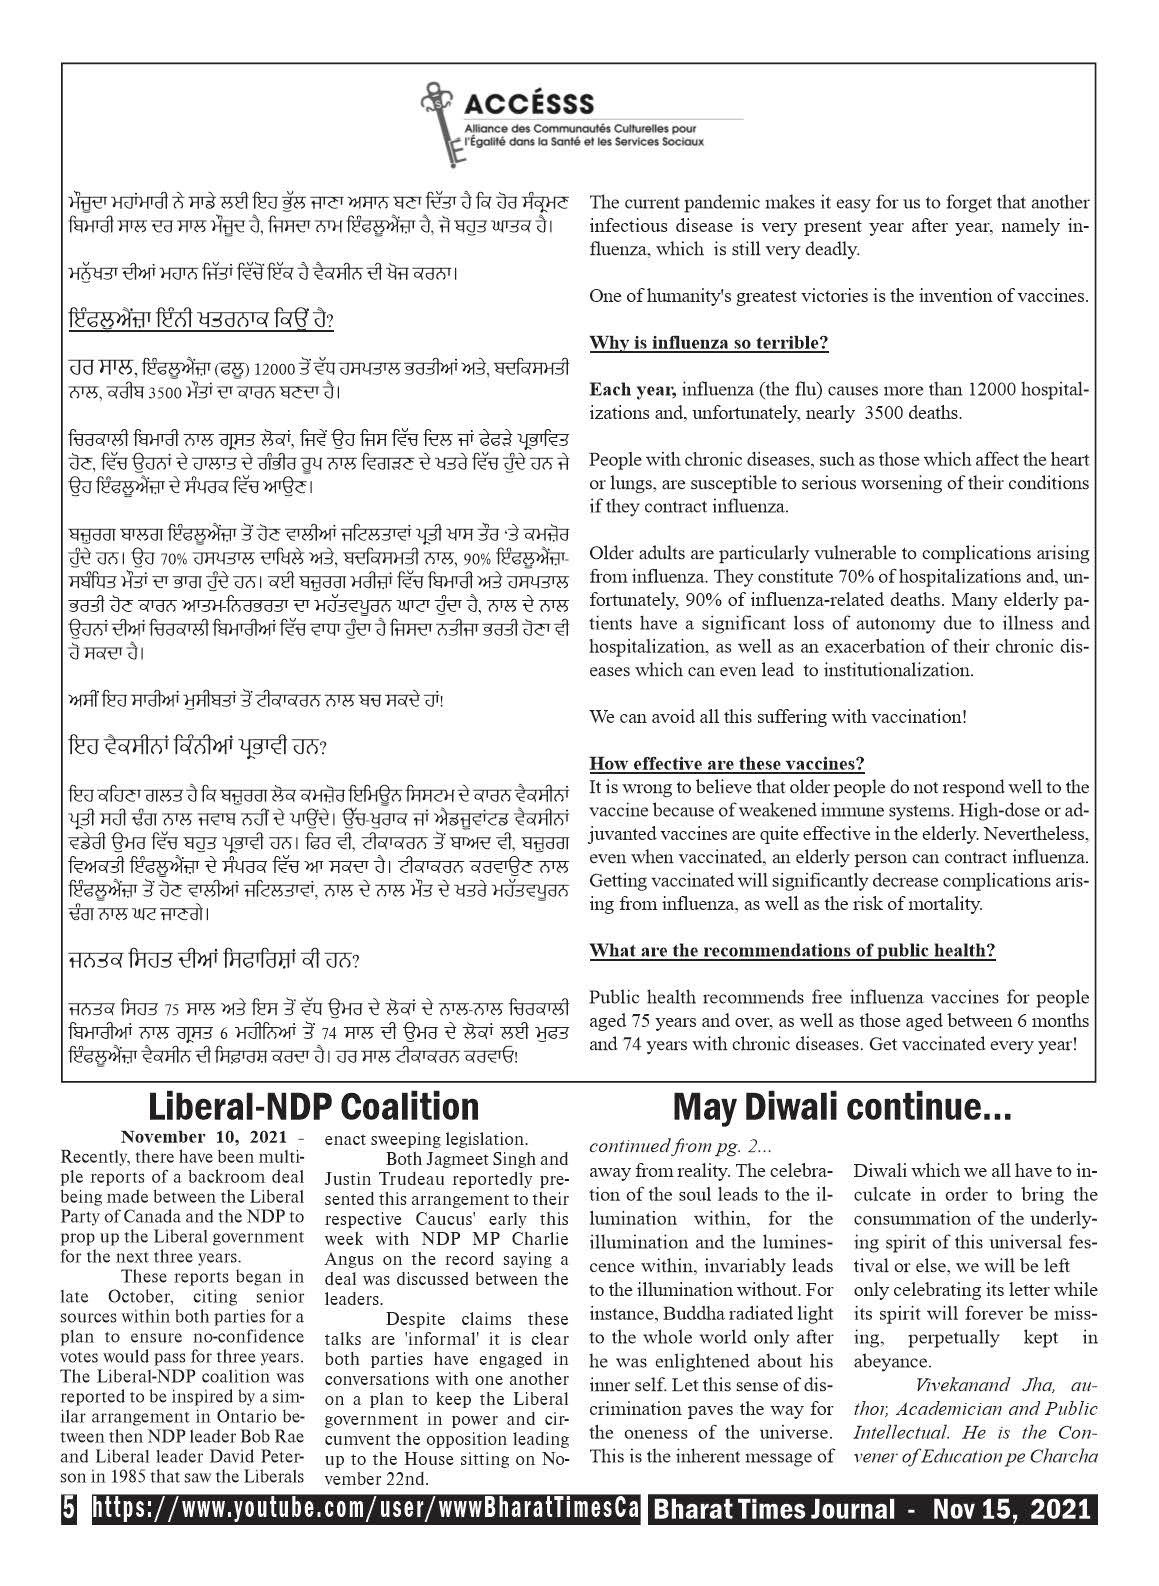 Bharat Times Journal - November 15, 2021 - pg 5 of 8